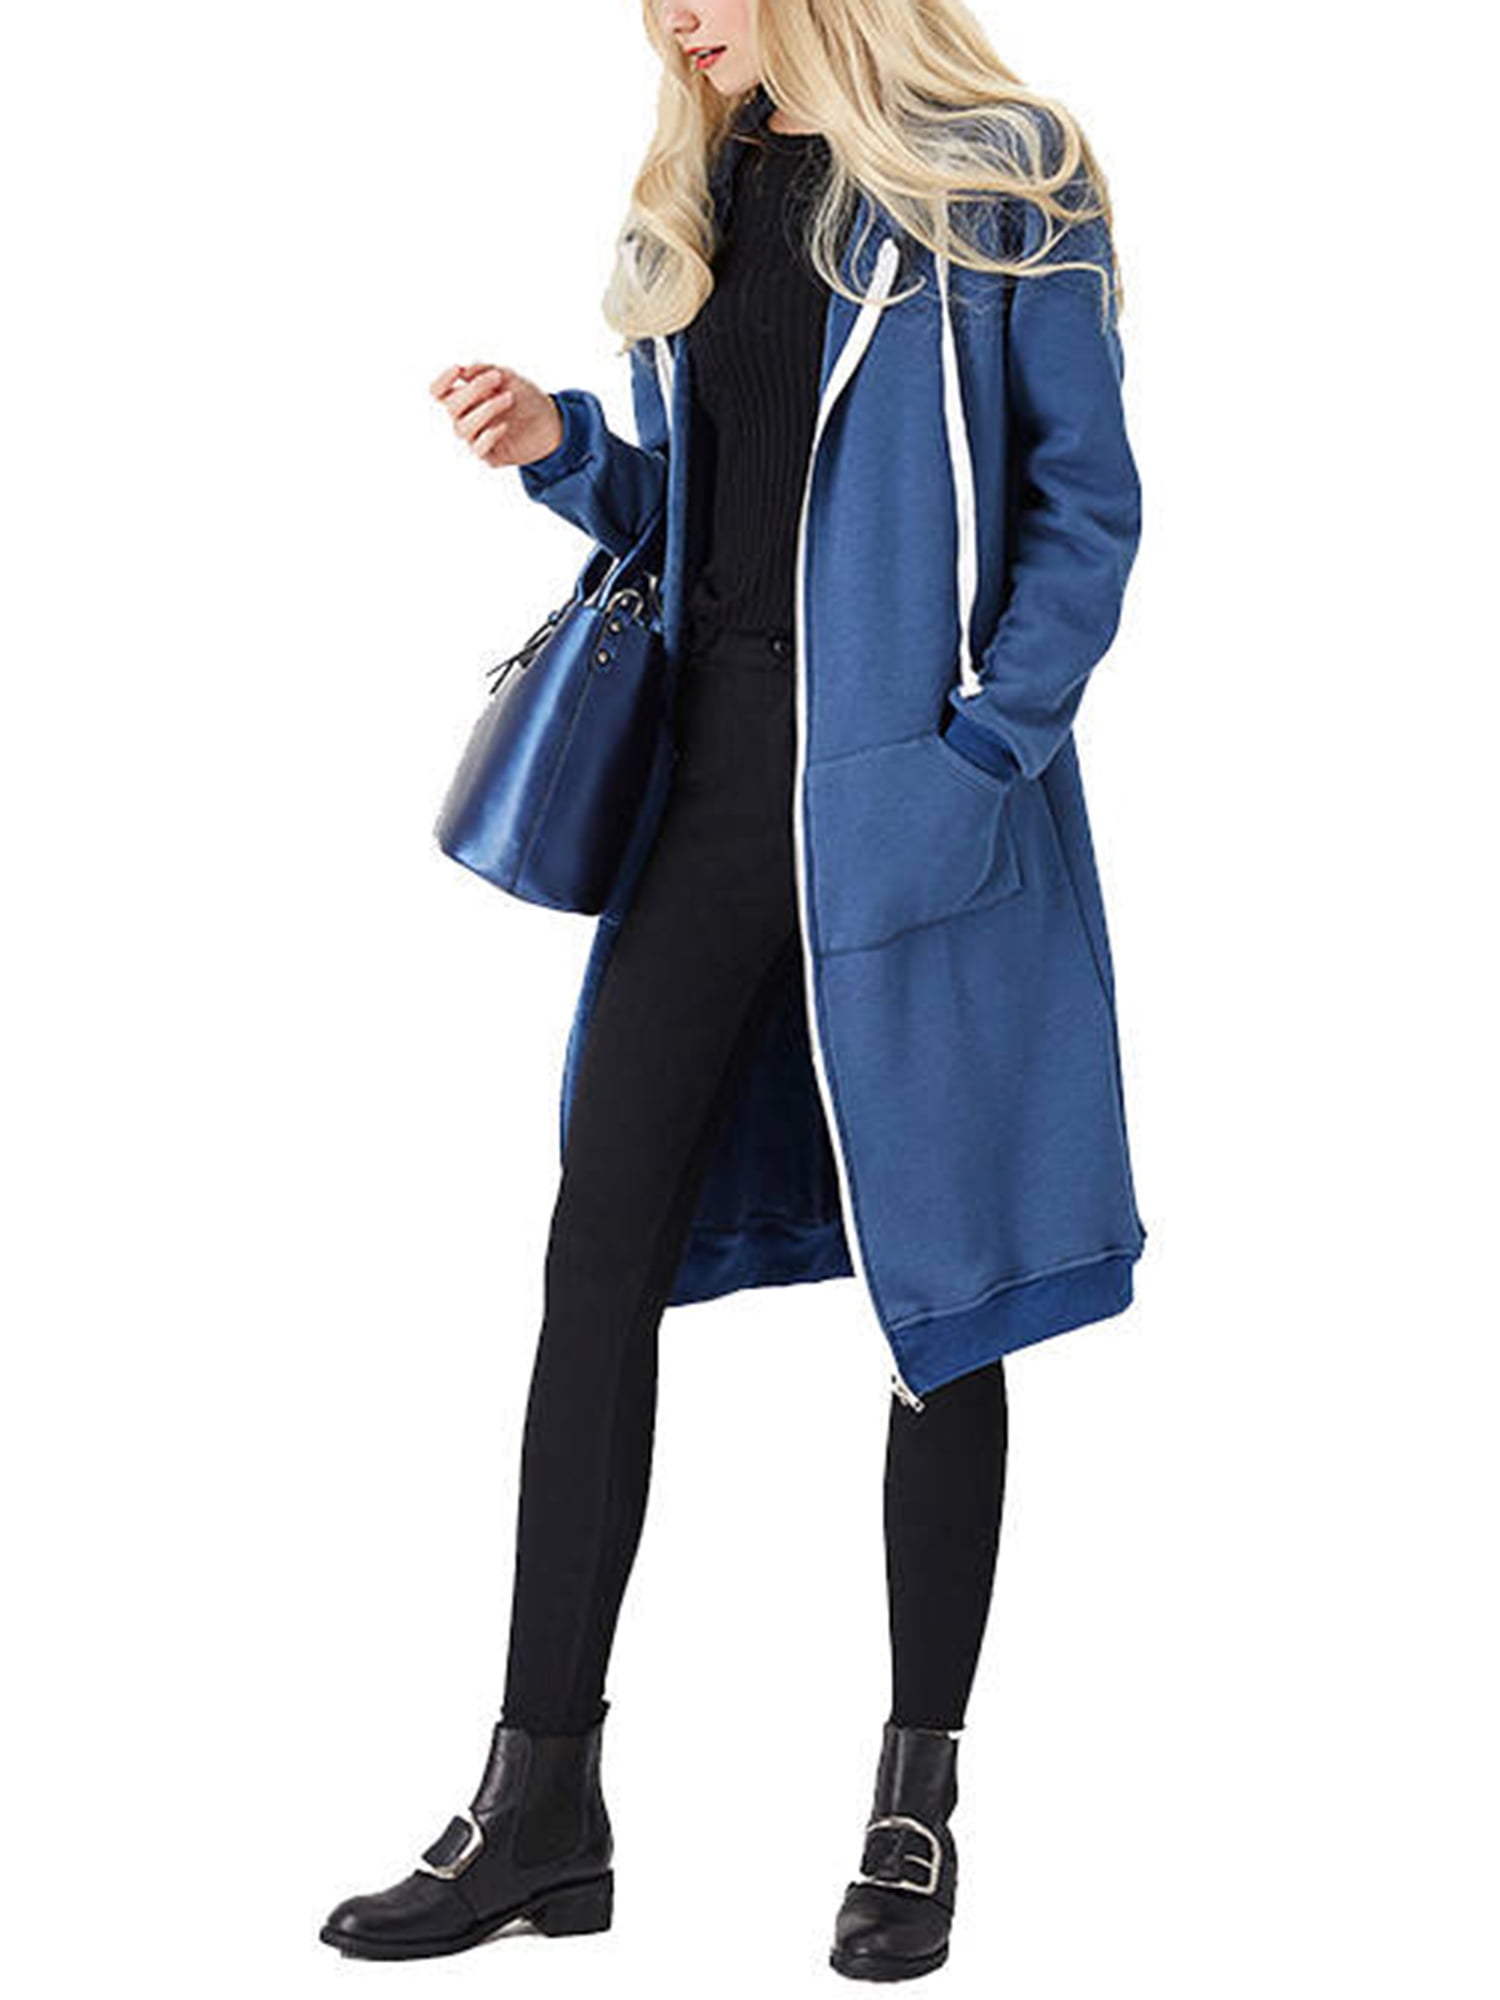 Rucokecg Casual Winter Women Plus Size Hooded Sweatshirt Coat Winter Warm Zipper Pockets Coat Outwear 